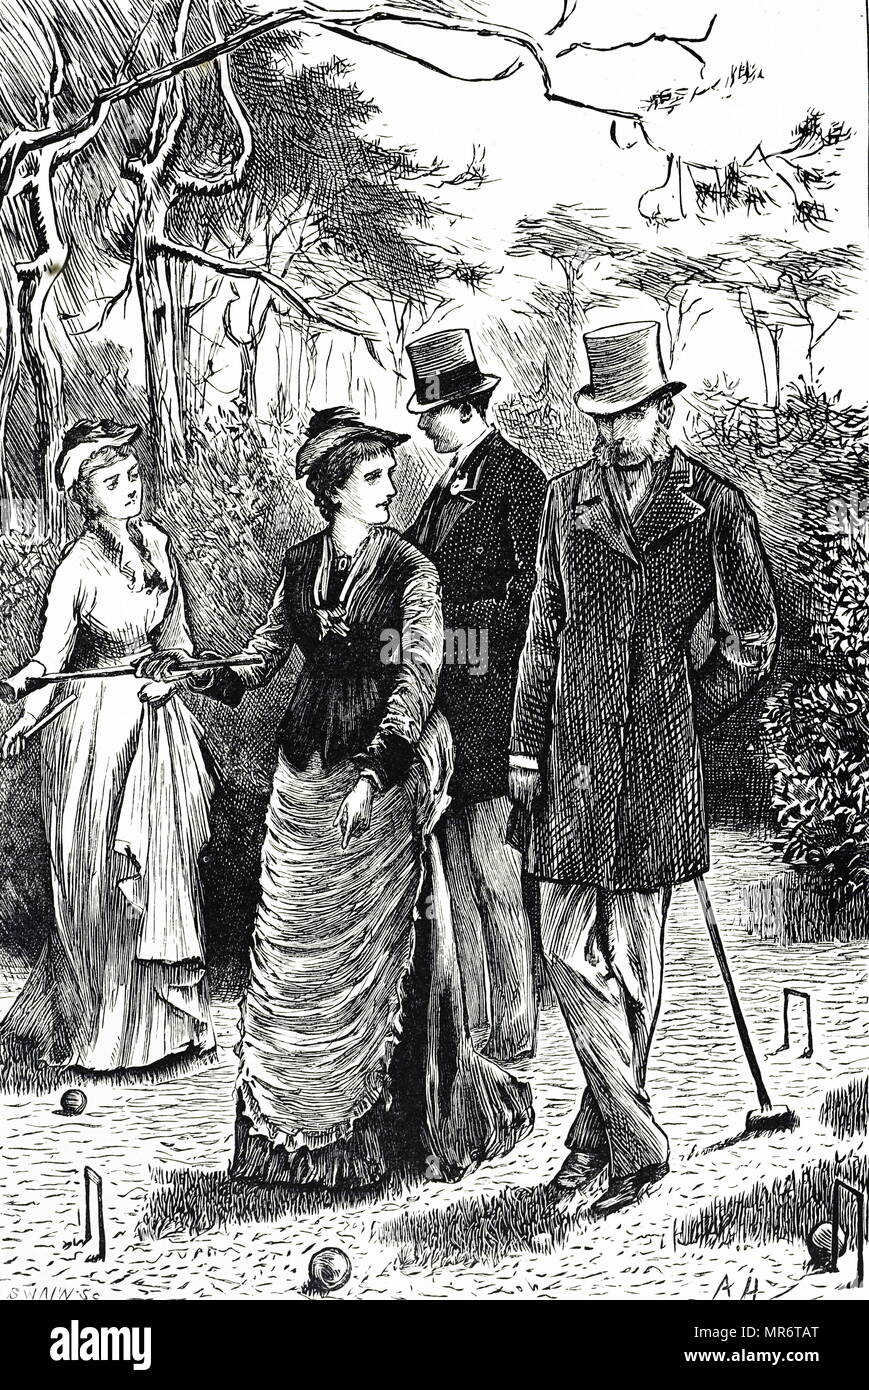 Gravur Darstellung einer Partie Krocket. Mit Ill. von Arthur Hopkins (1848-1930), englischer Künstler. Vom 19. Jahrhundert Stockfoto